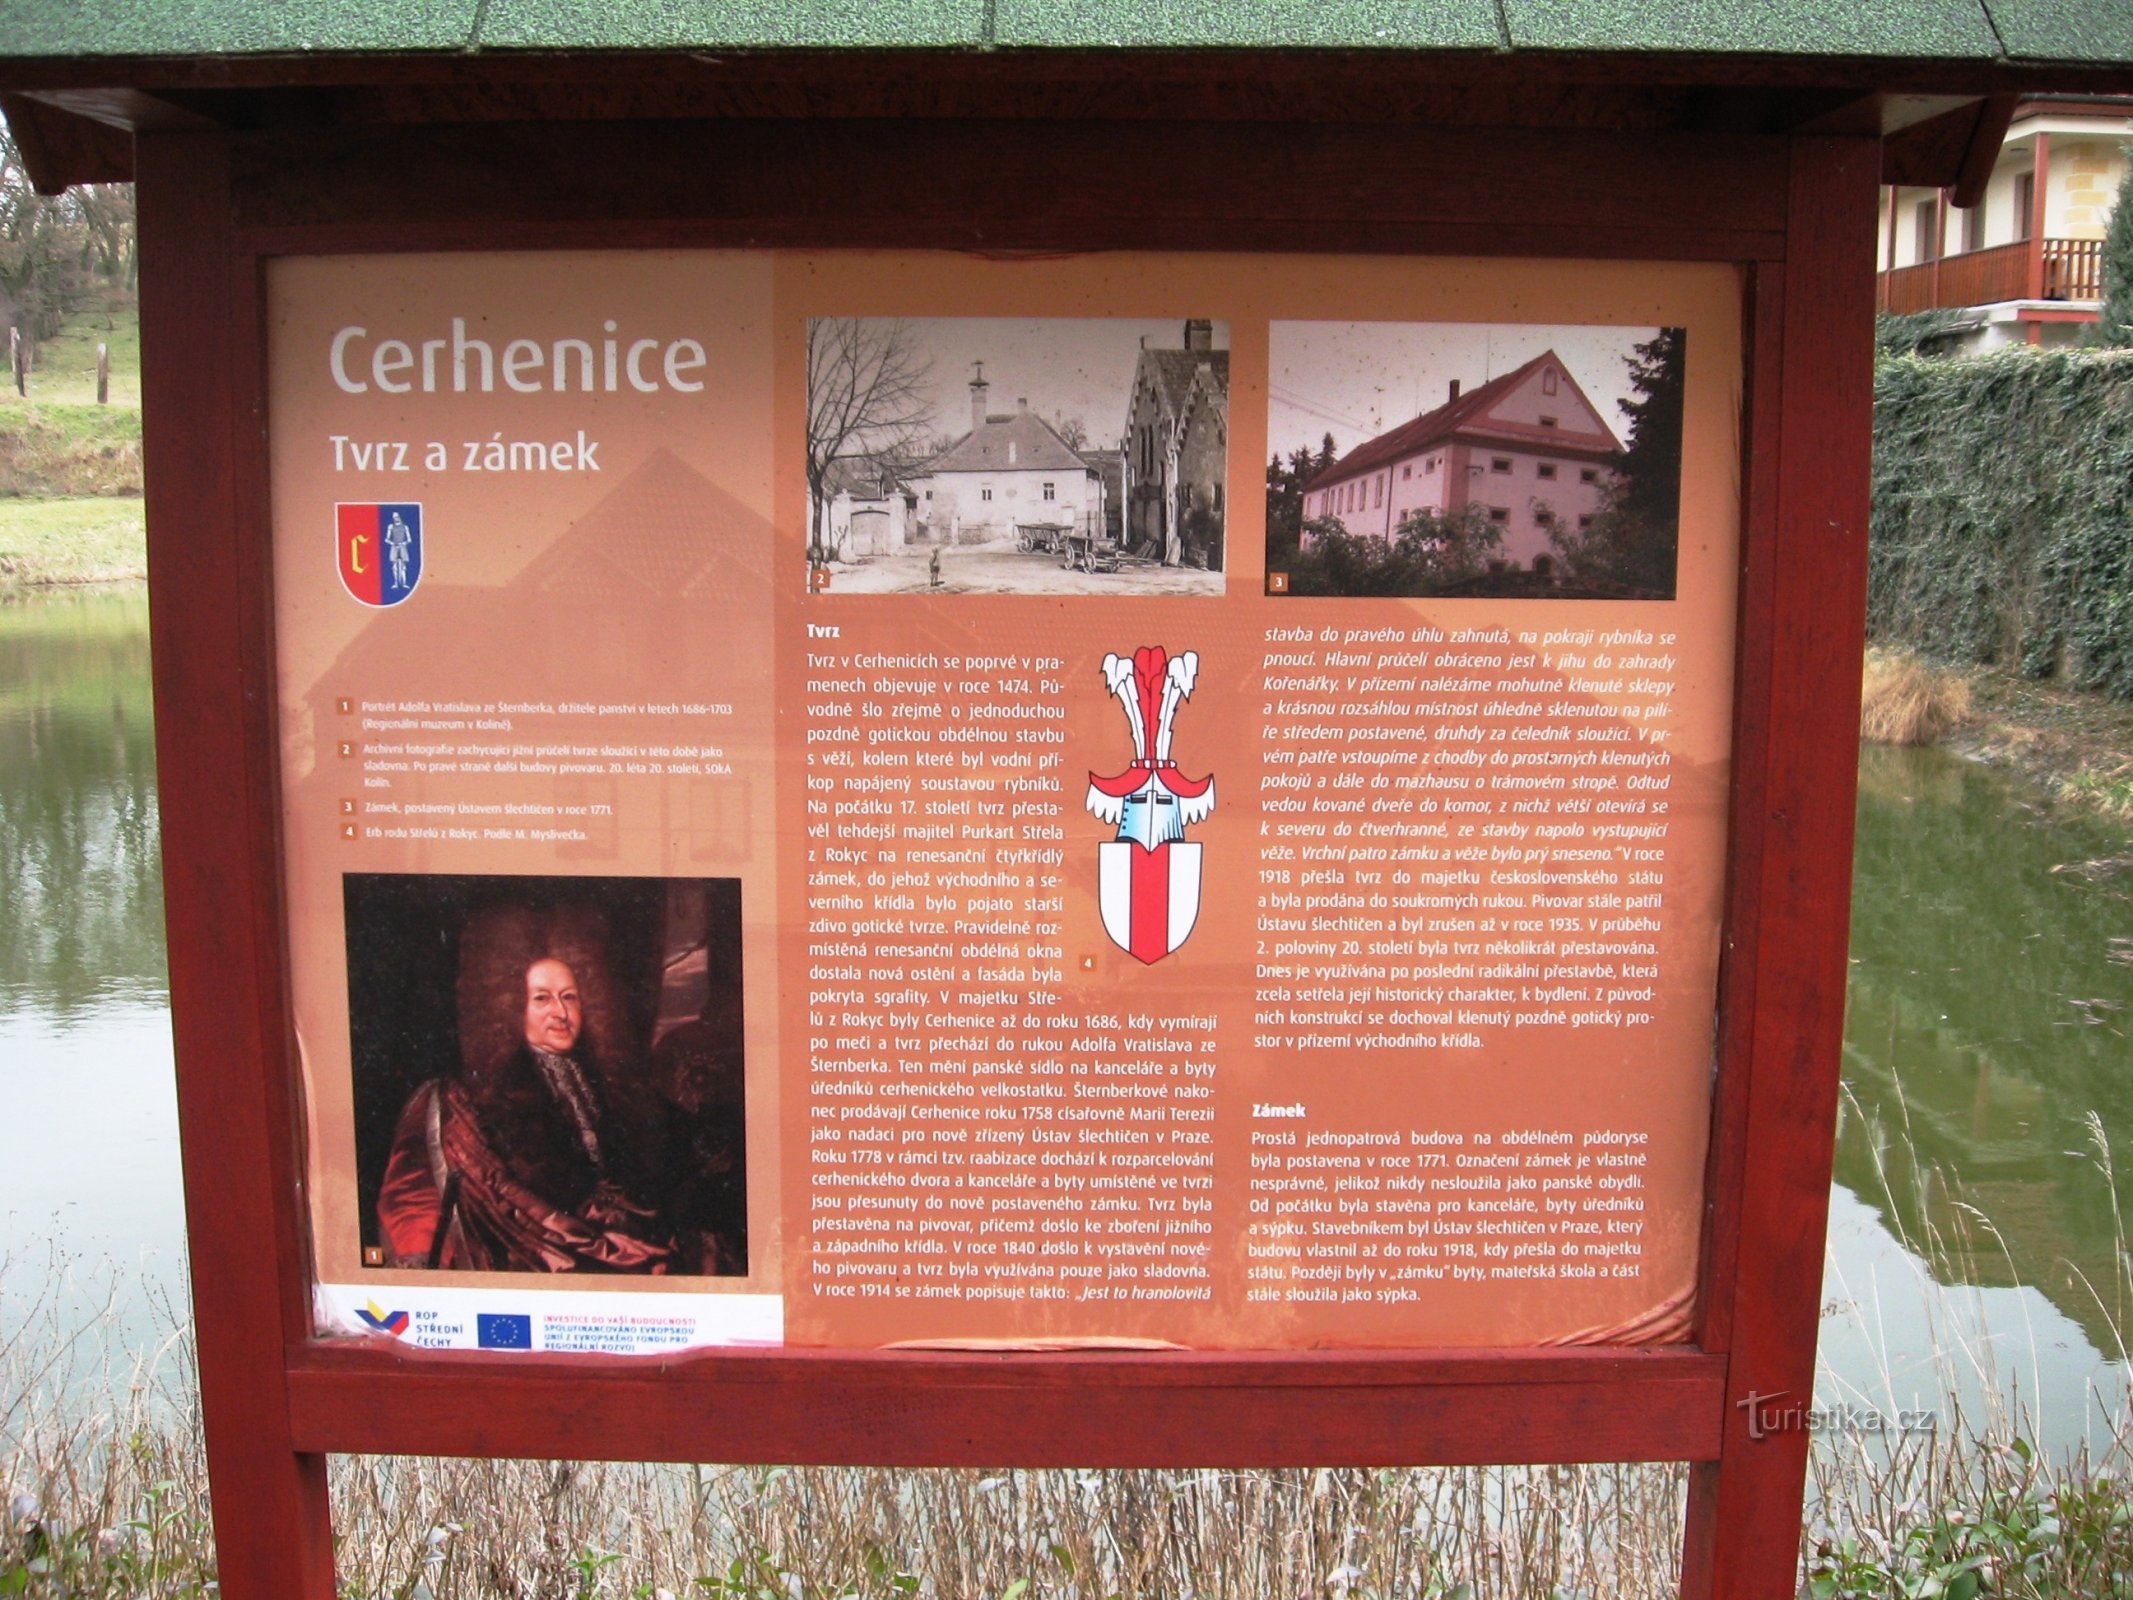 bảng thông tin tại lâu đài và pháo đài ở Cerhenice